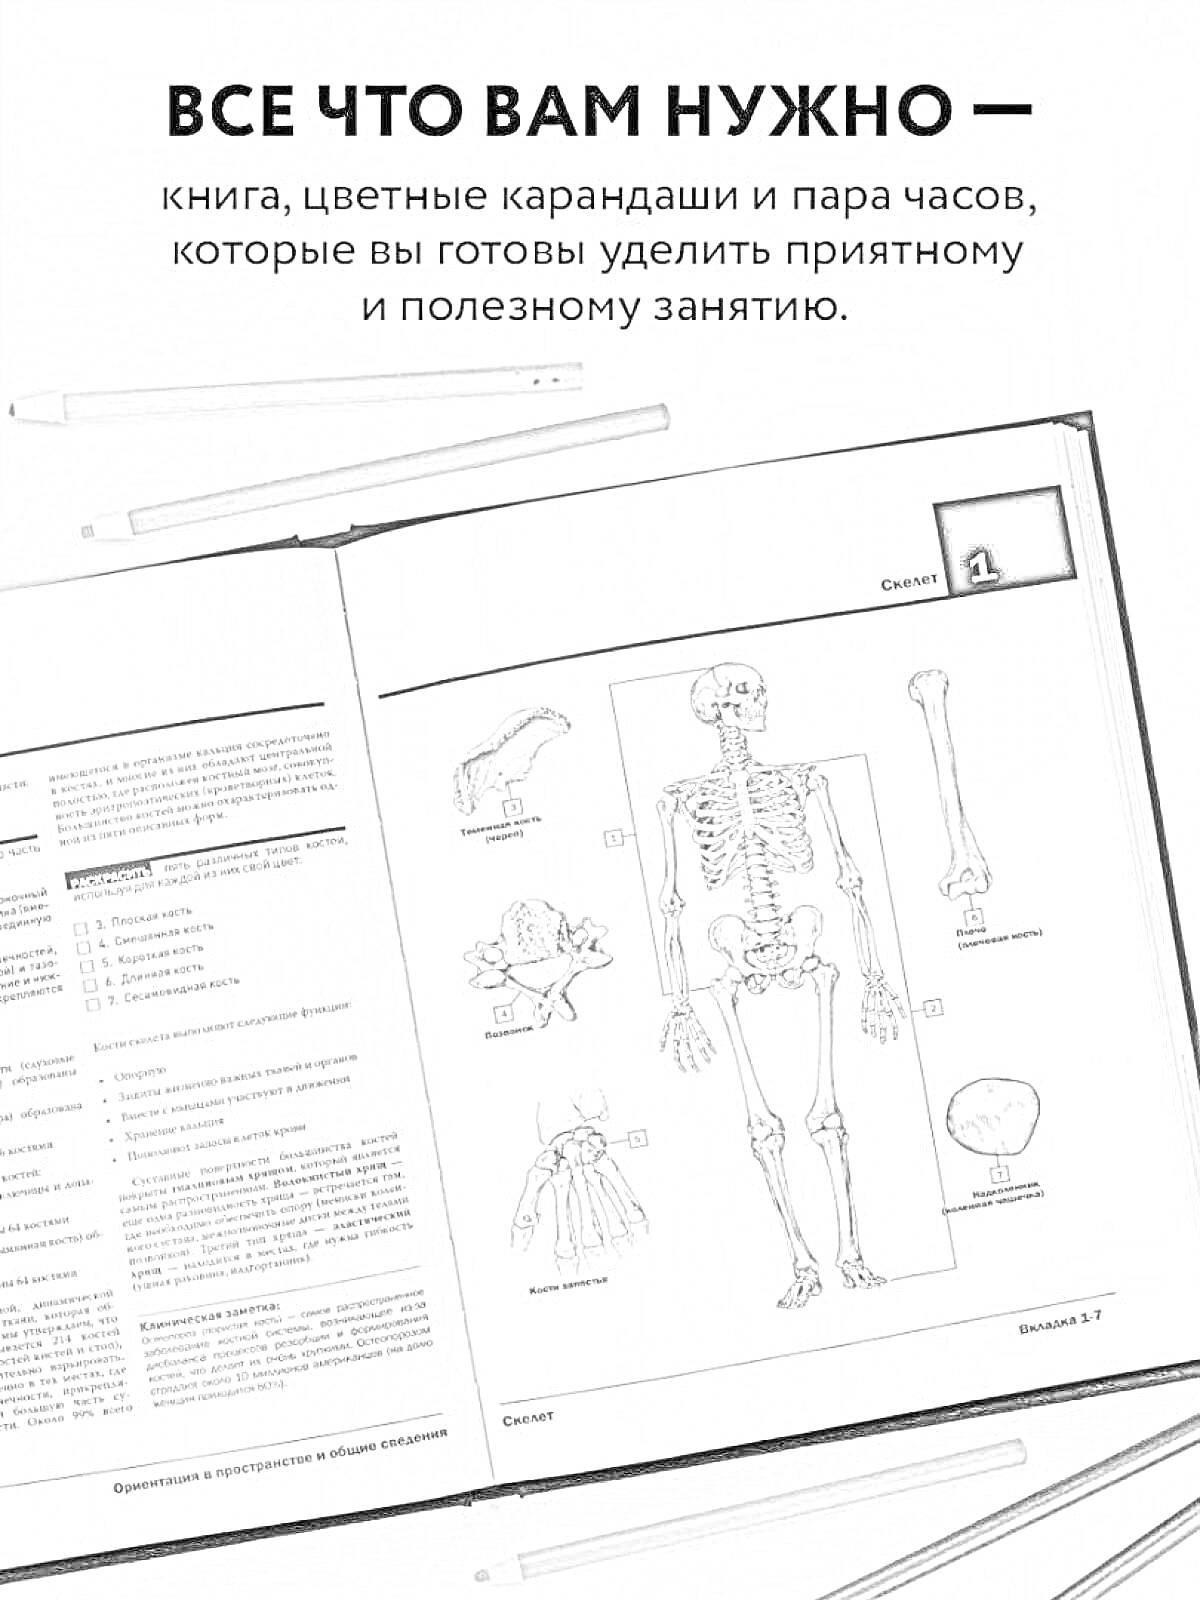 анатомический скелет и кости, включая череп, лопатку, таз, бедренную кость